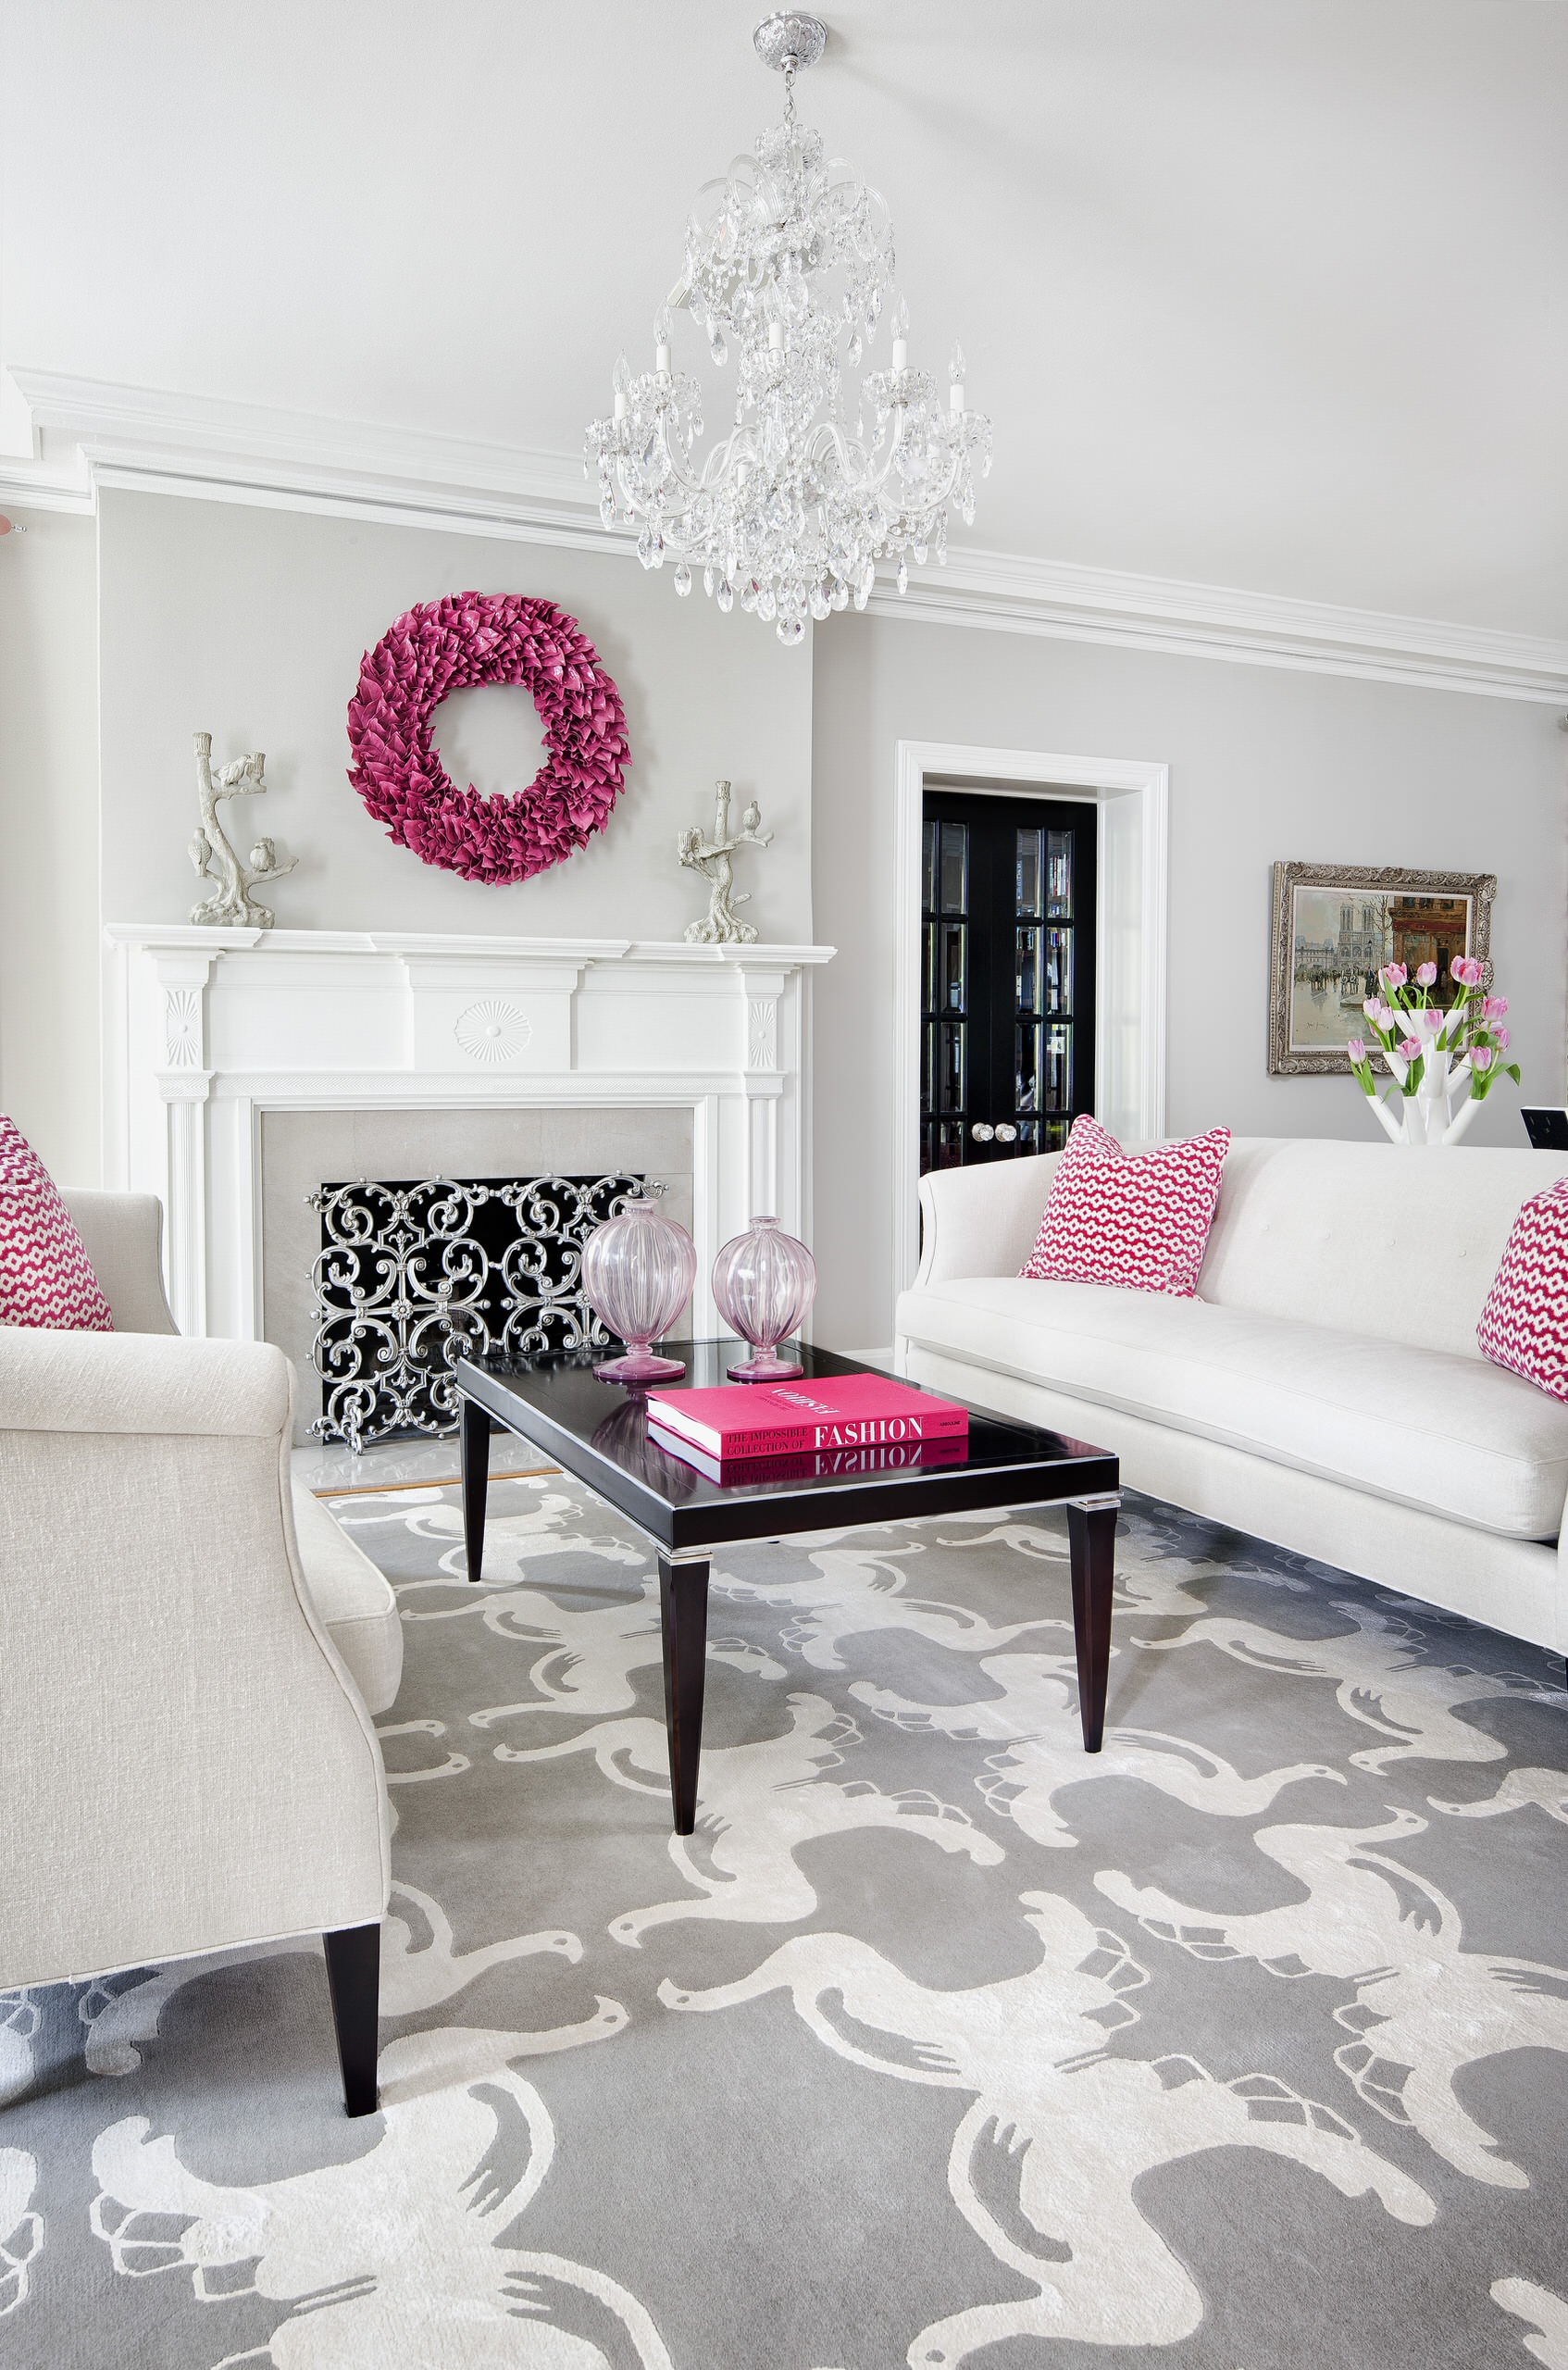 Inspirational Living Room Ideas - Living Room Design: Magnolia Farms